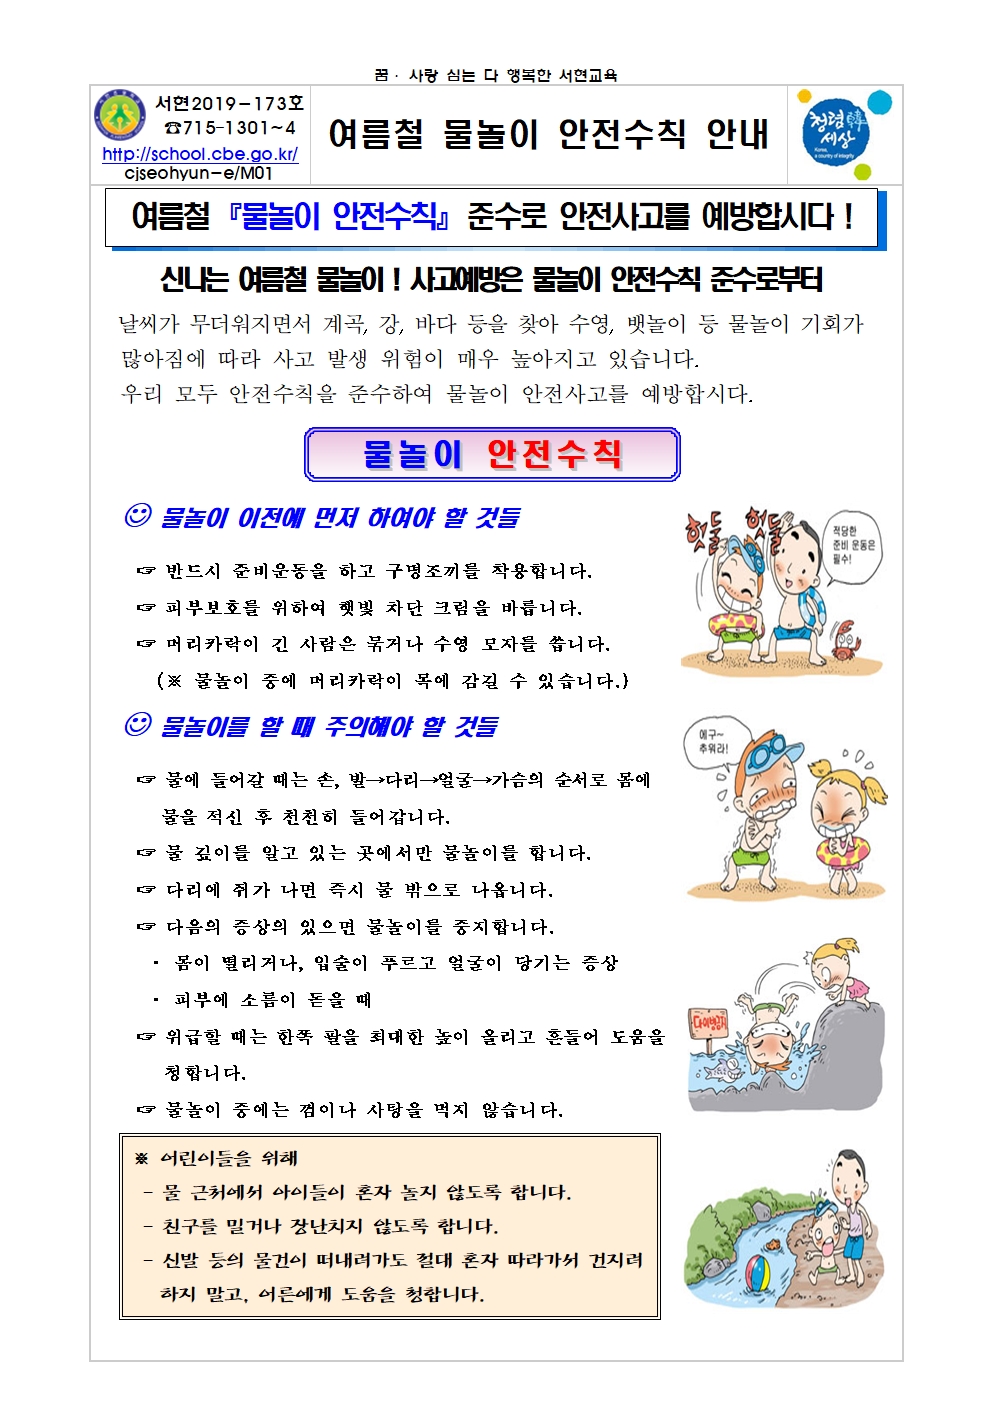 2019. 여름철 물놀이 안전사고 예방001